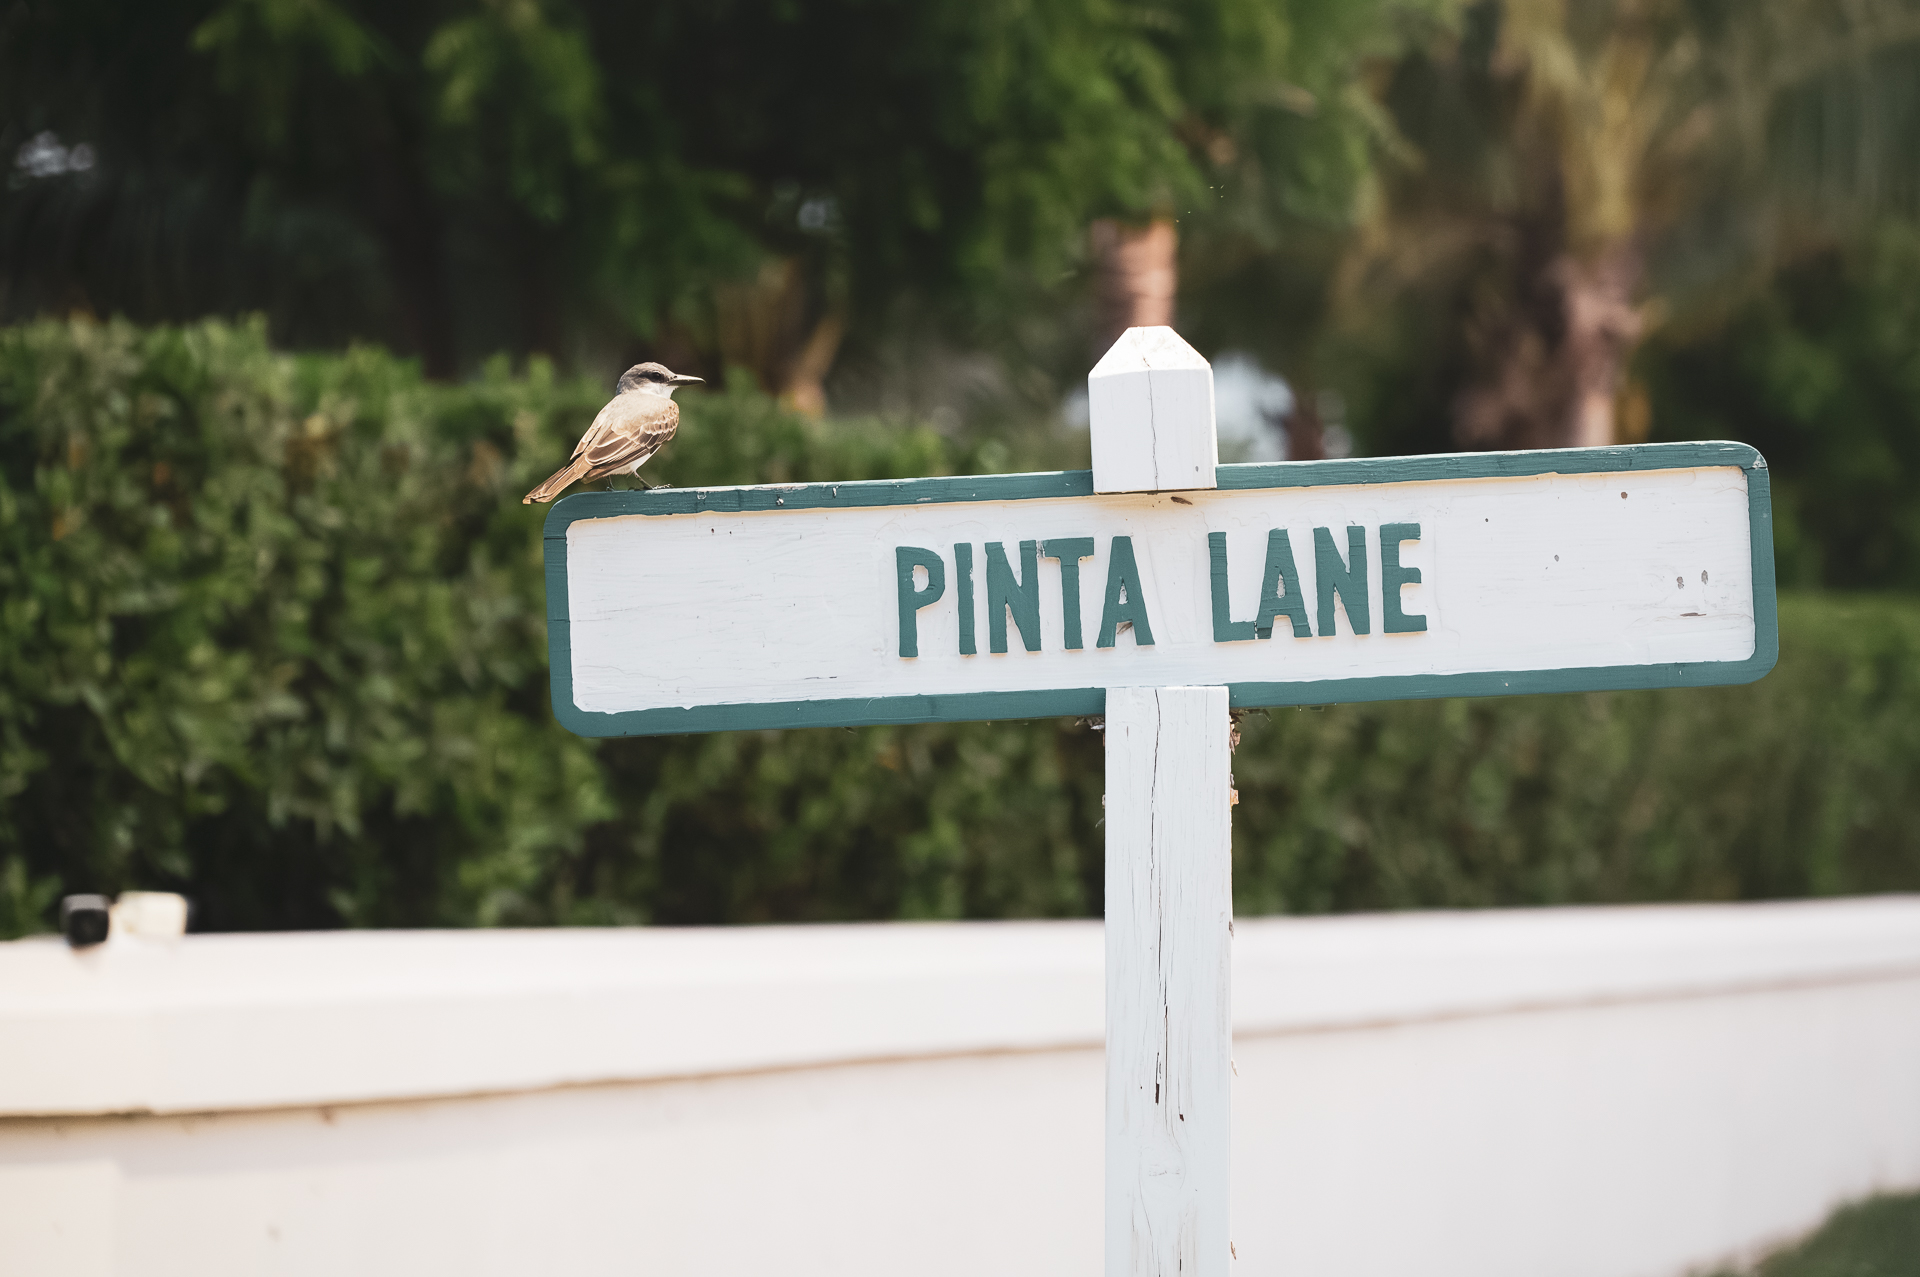 Pinta Lane